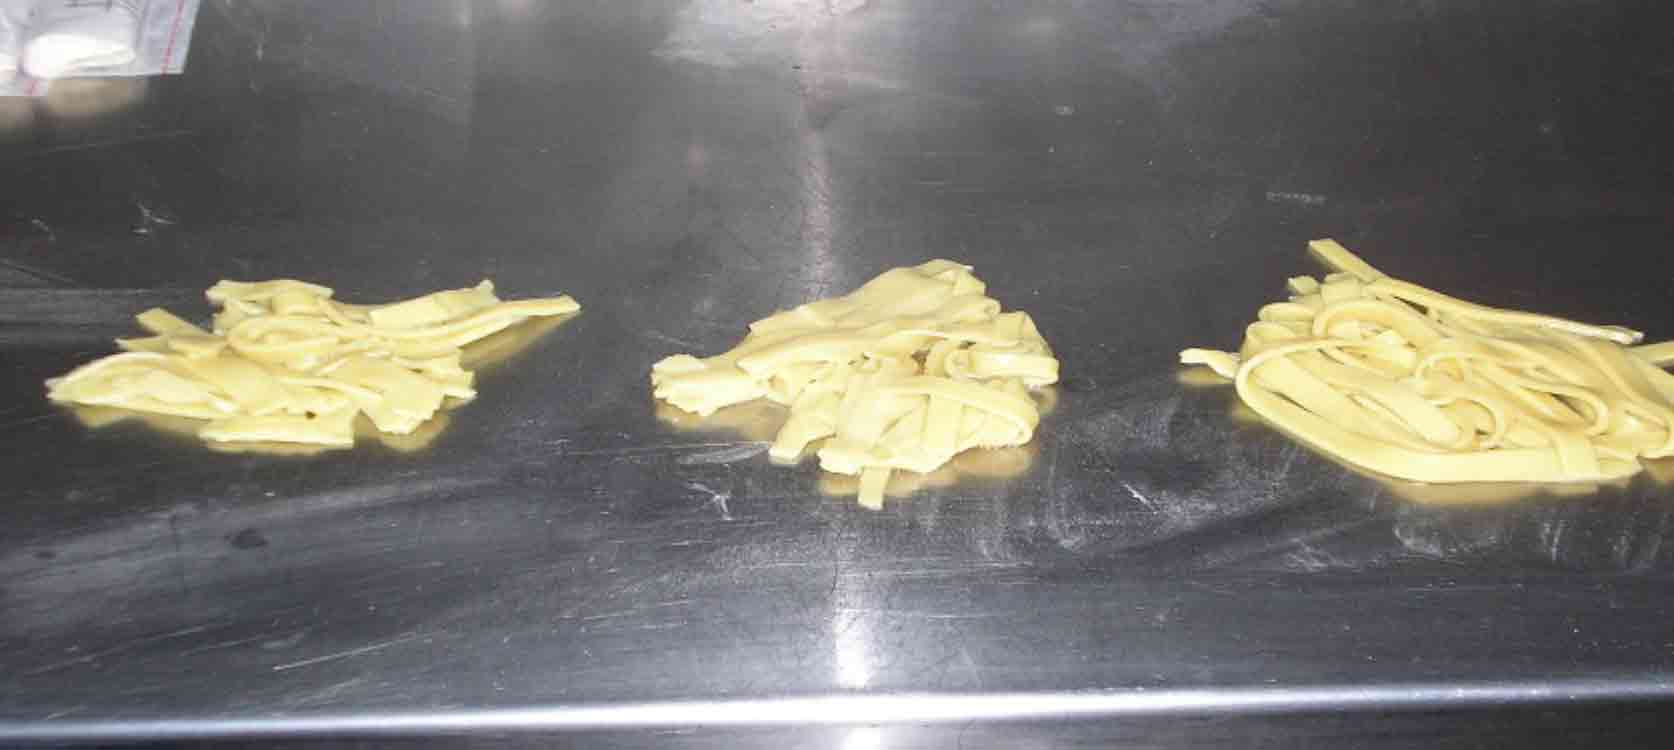 Gluten Free Pasta Vegebind P by 5%, 10%, 15%